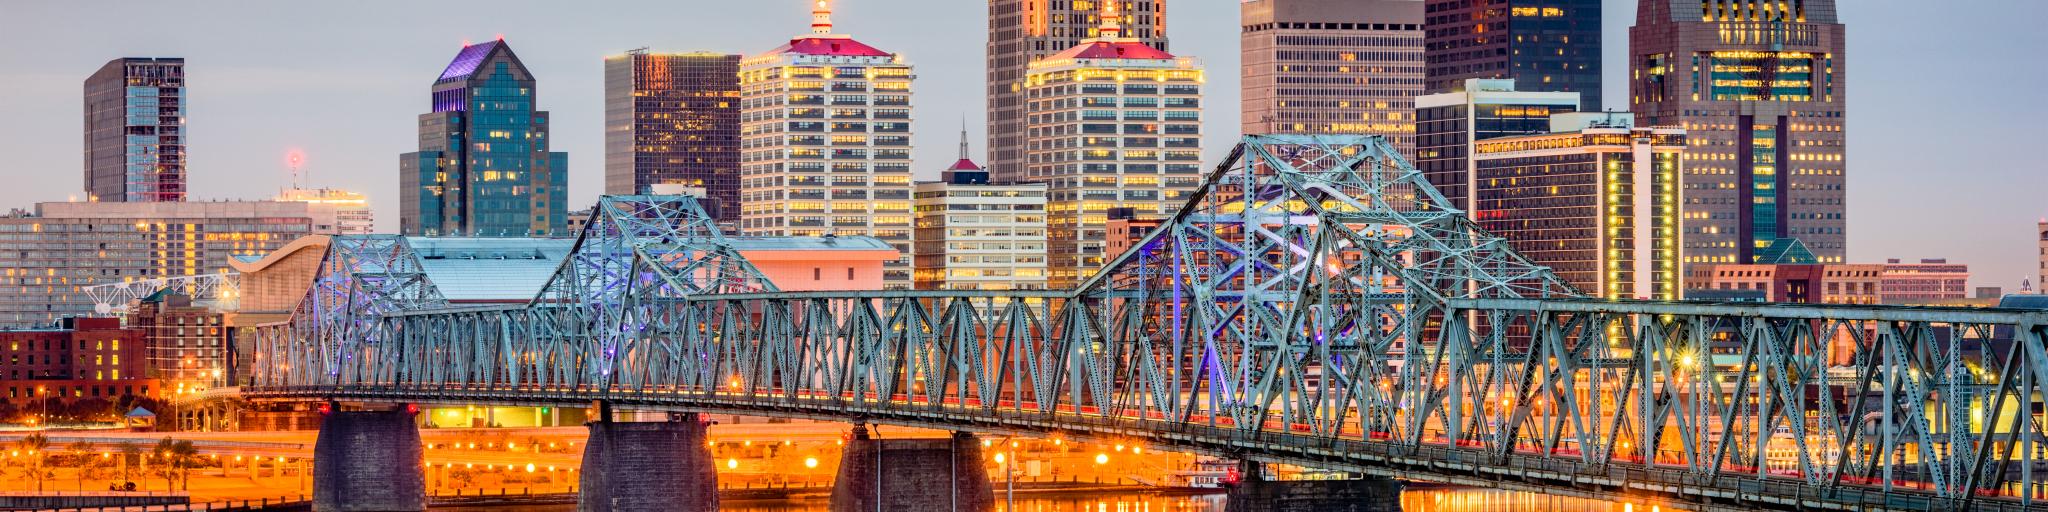 Louisville, Kentucky, USA skyline on the river